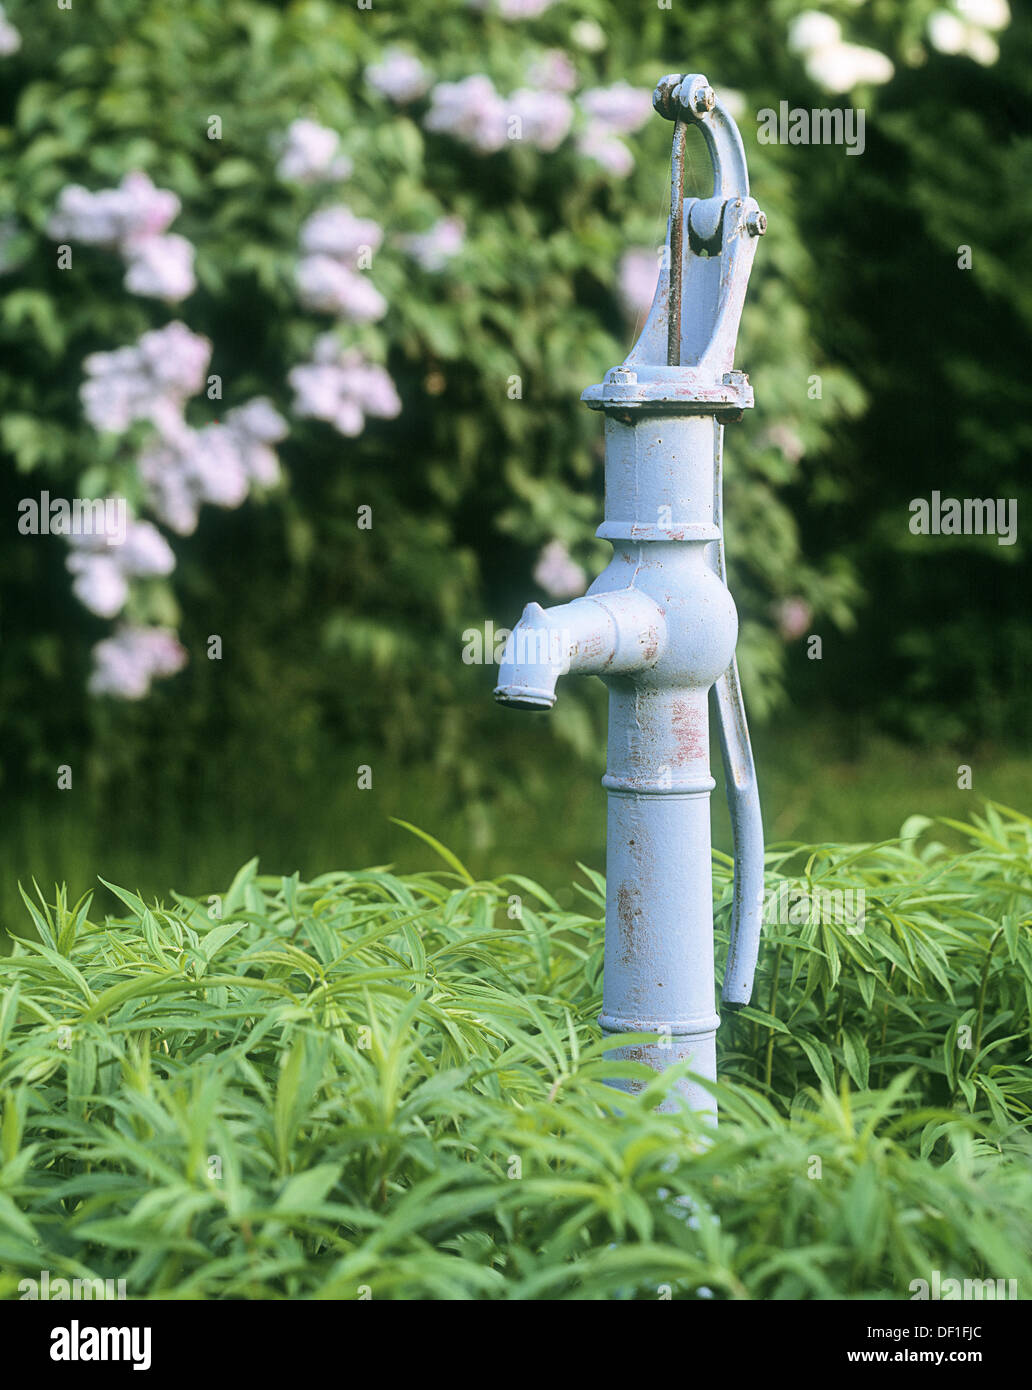 Alte manuelle Wasserpumpe im Garten. Schweden, Skandinavien, Europa  Stockfotografie - Alamy